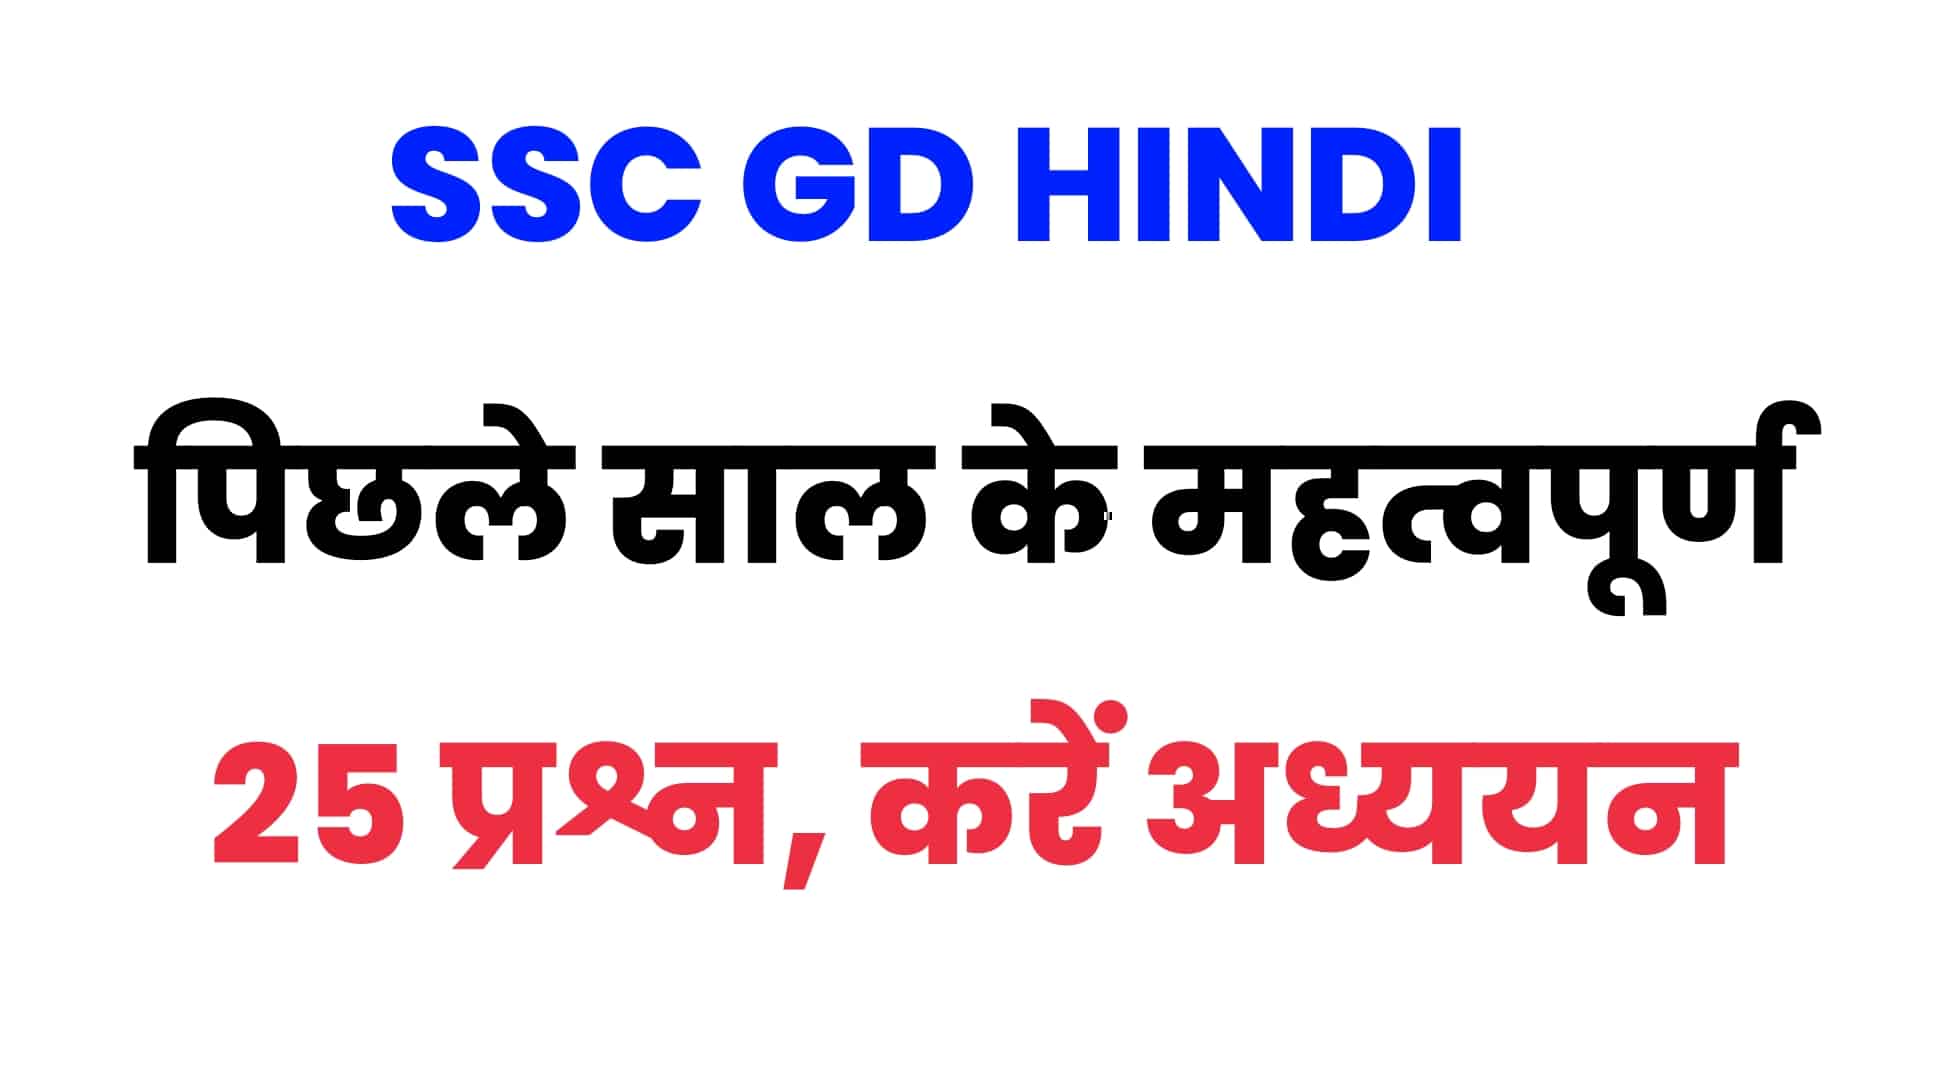 SSC GD परीक्षा में हिंदी भाषा के पूछे गए पिछले वर्षों के प्रश्नों का संग्रह : परीक्षा से पहले जरूर करें अध्ययन